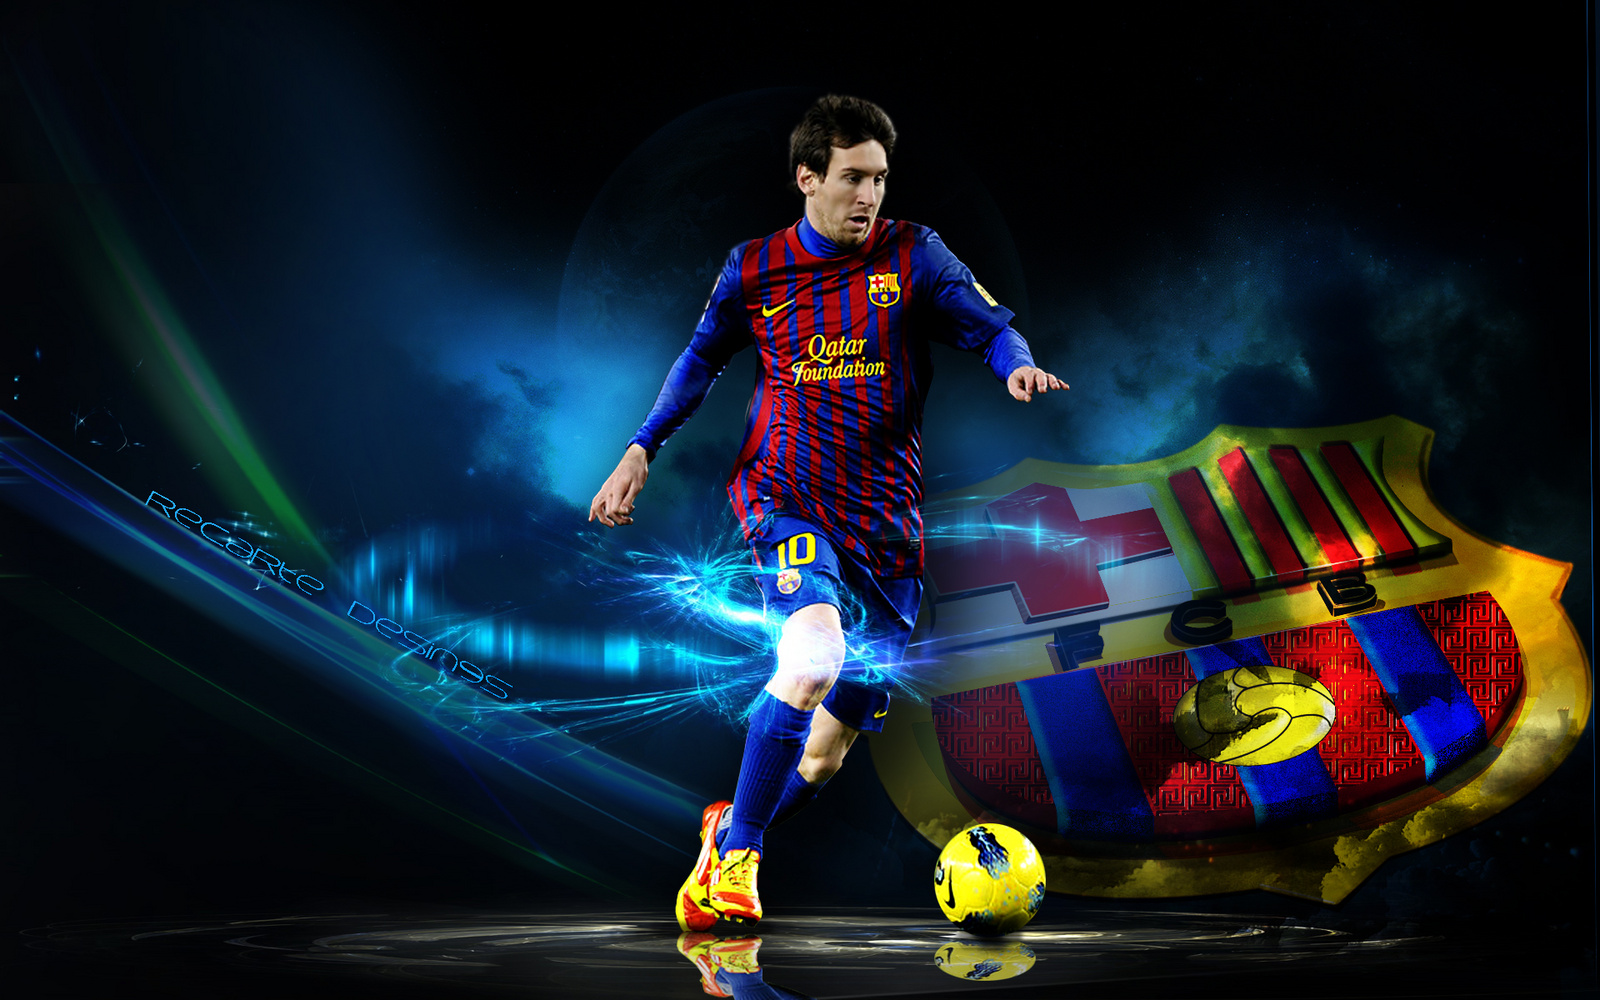 Lionel Messi: Ngôi sao bóng đá vĩ đại nhất thế giới! Hãy cùng xem hình ảnh của Messi và khám phá tài năng và sự nghiệp chói sáng của anh ta trong suốt thập kỷ qua.